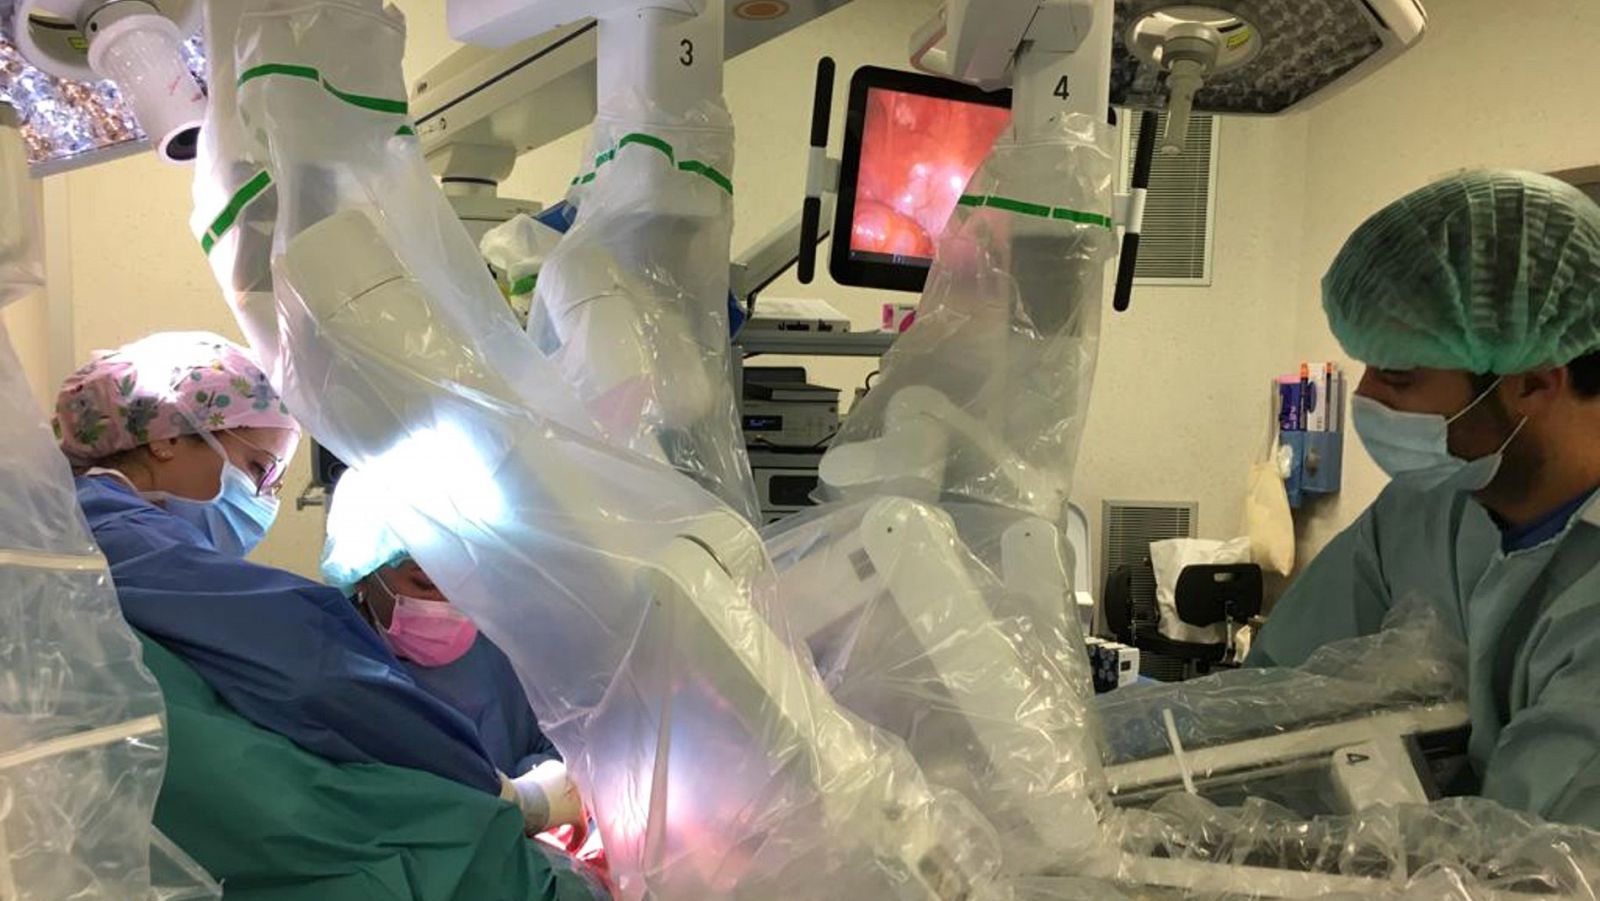 El equipo médico realiza la cirugía robótica de reasignación de sexo